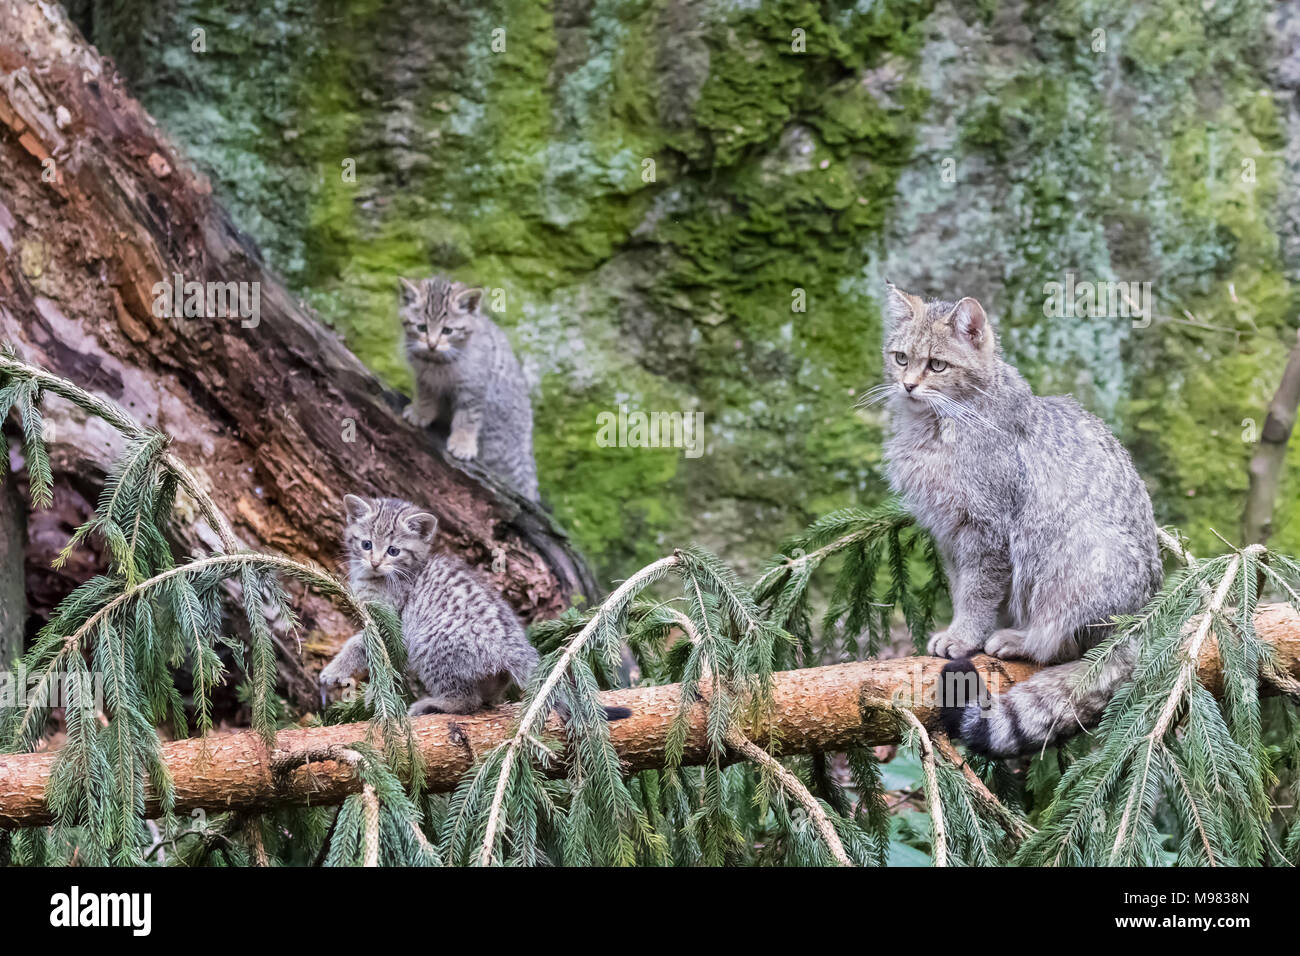 Alemania, el Parque Nacional del Bosque Bávaro, animal Neuschoenau sitio al aire libre, gatos salvajes, Felis silvestris, madre animal con animales jóvenes Foto de stock